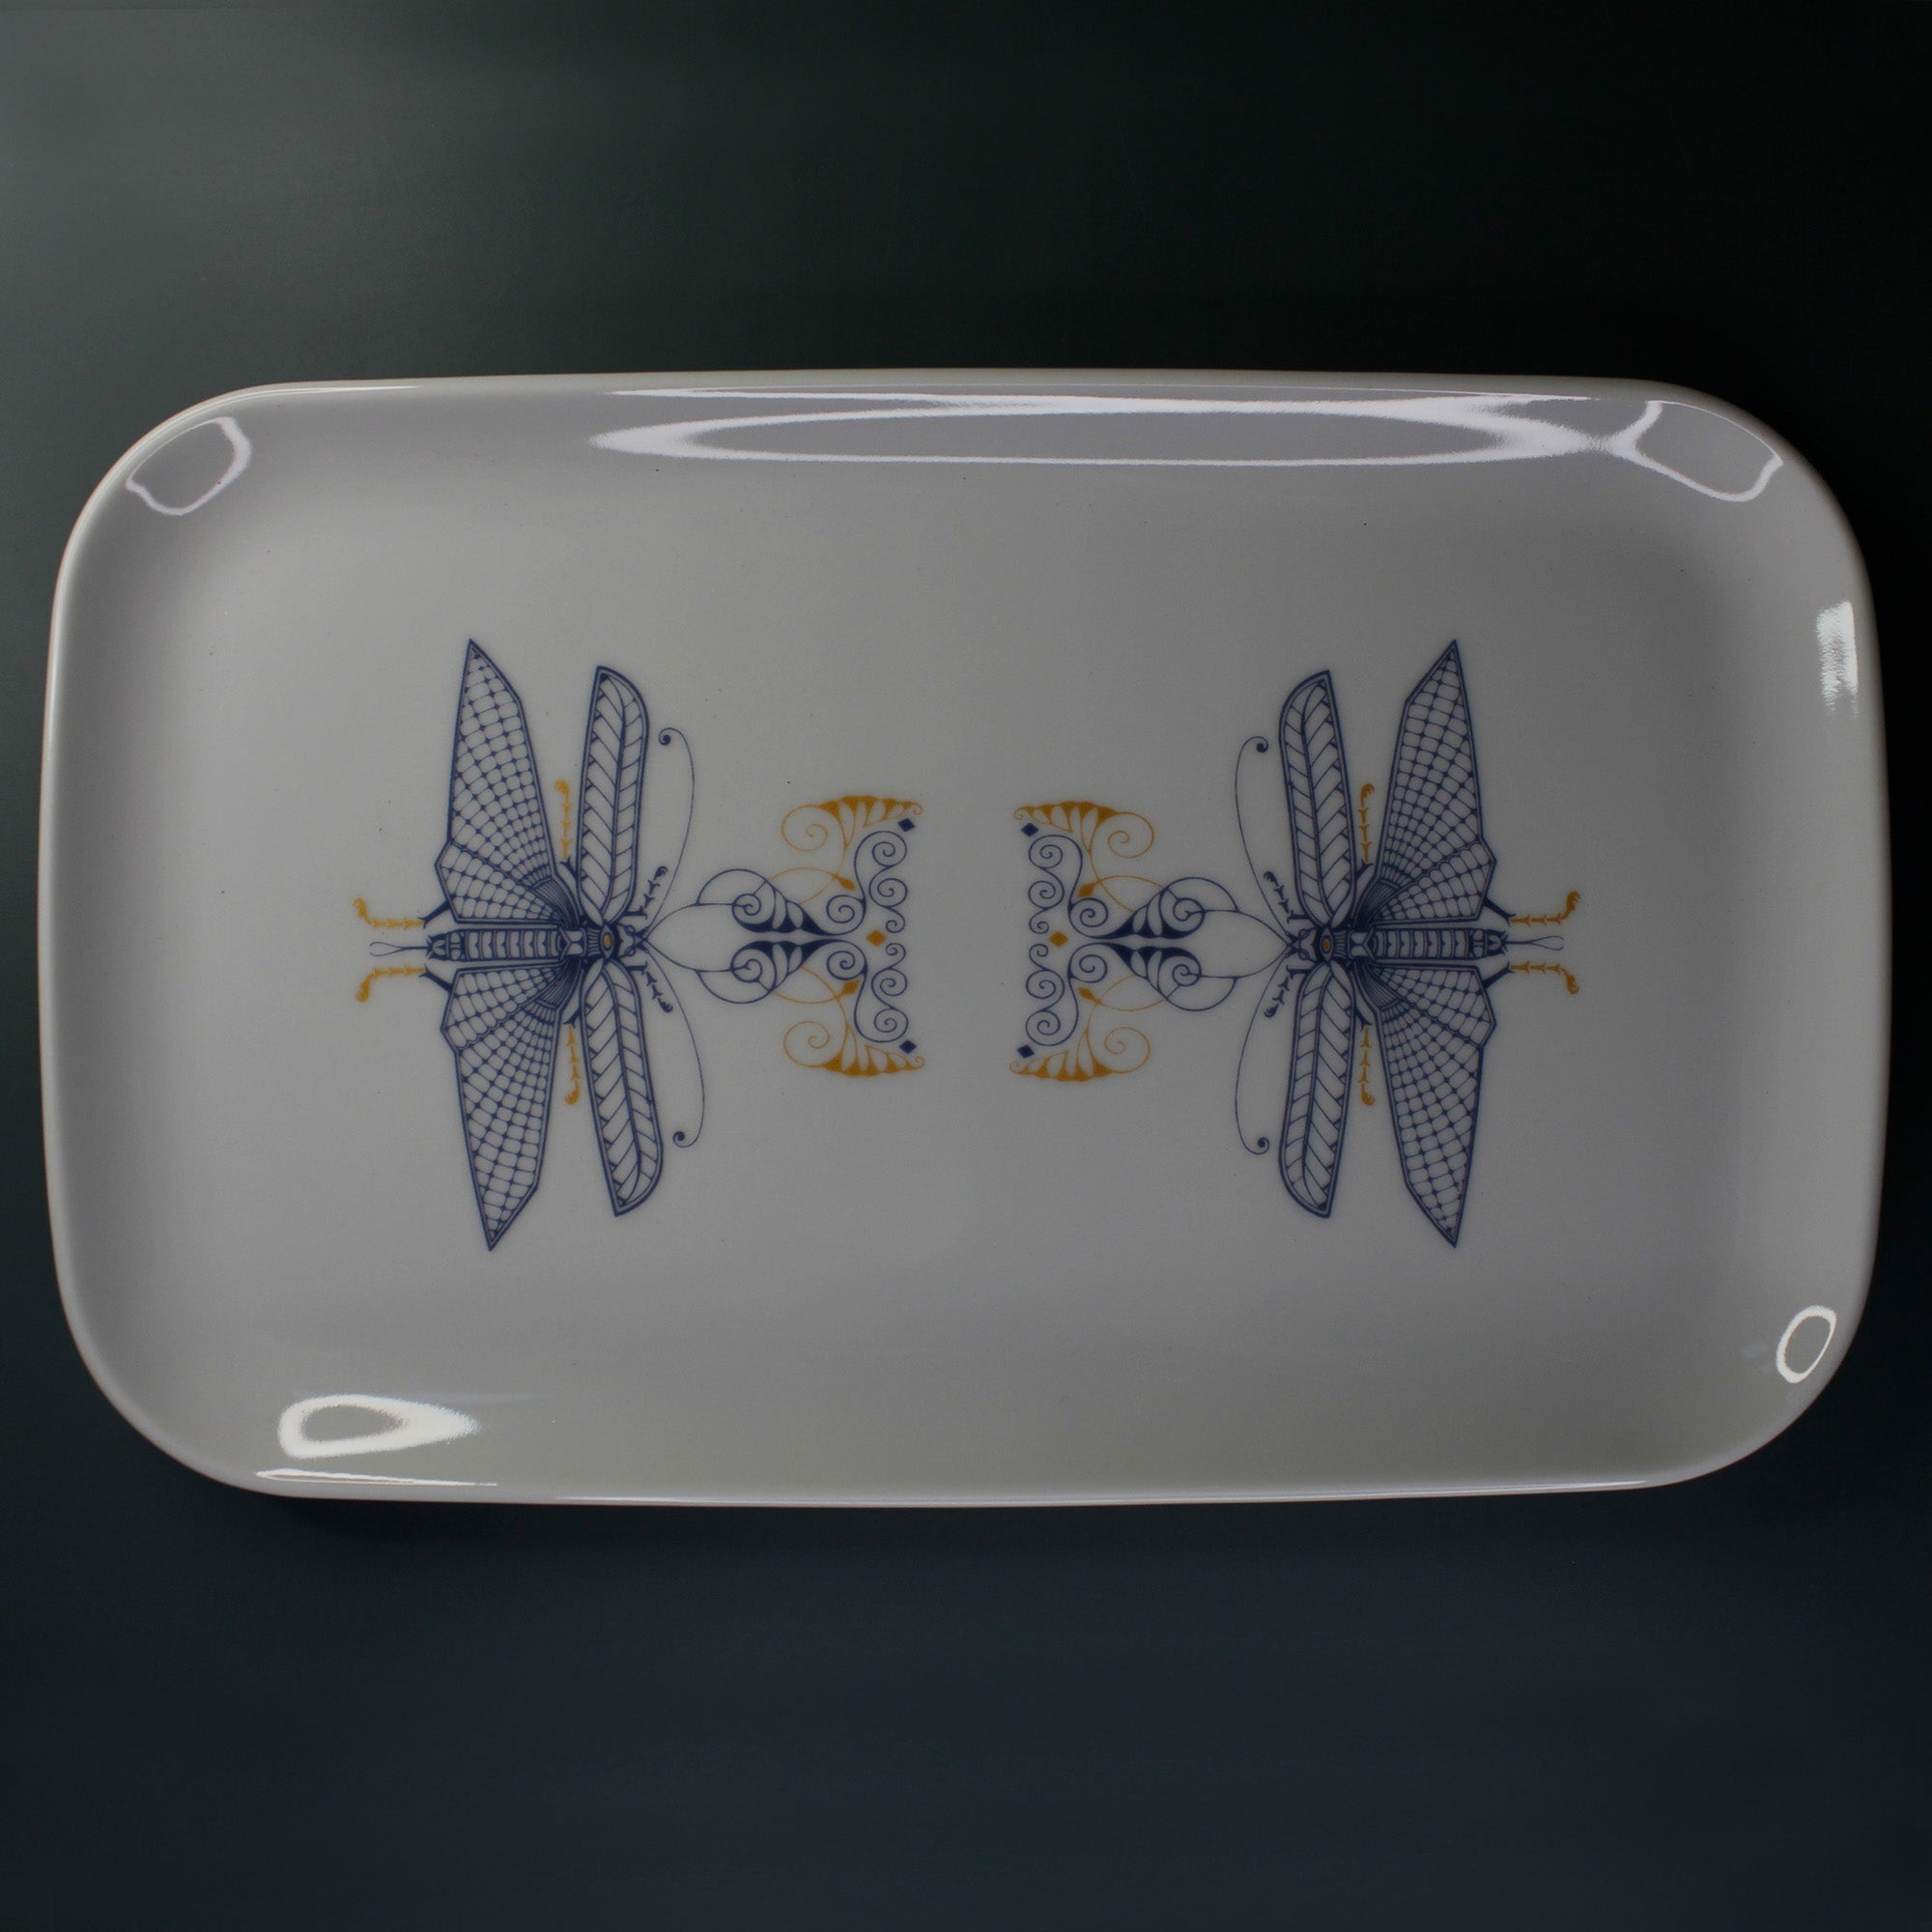 Decorative plate - Dragonflies